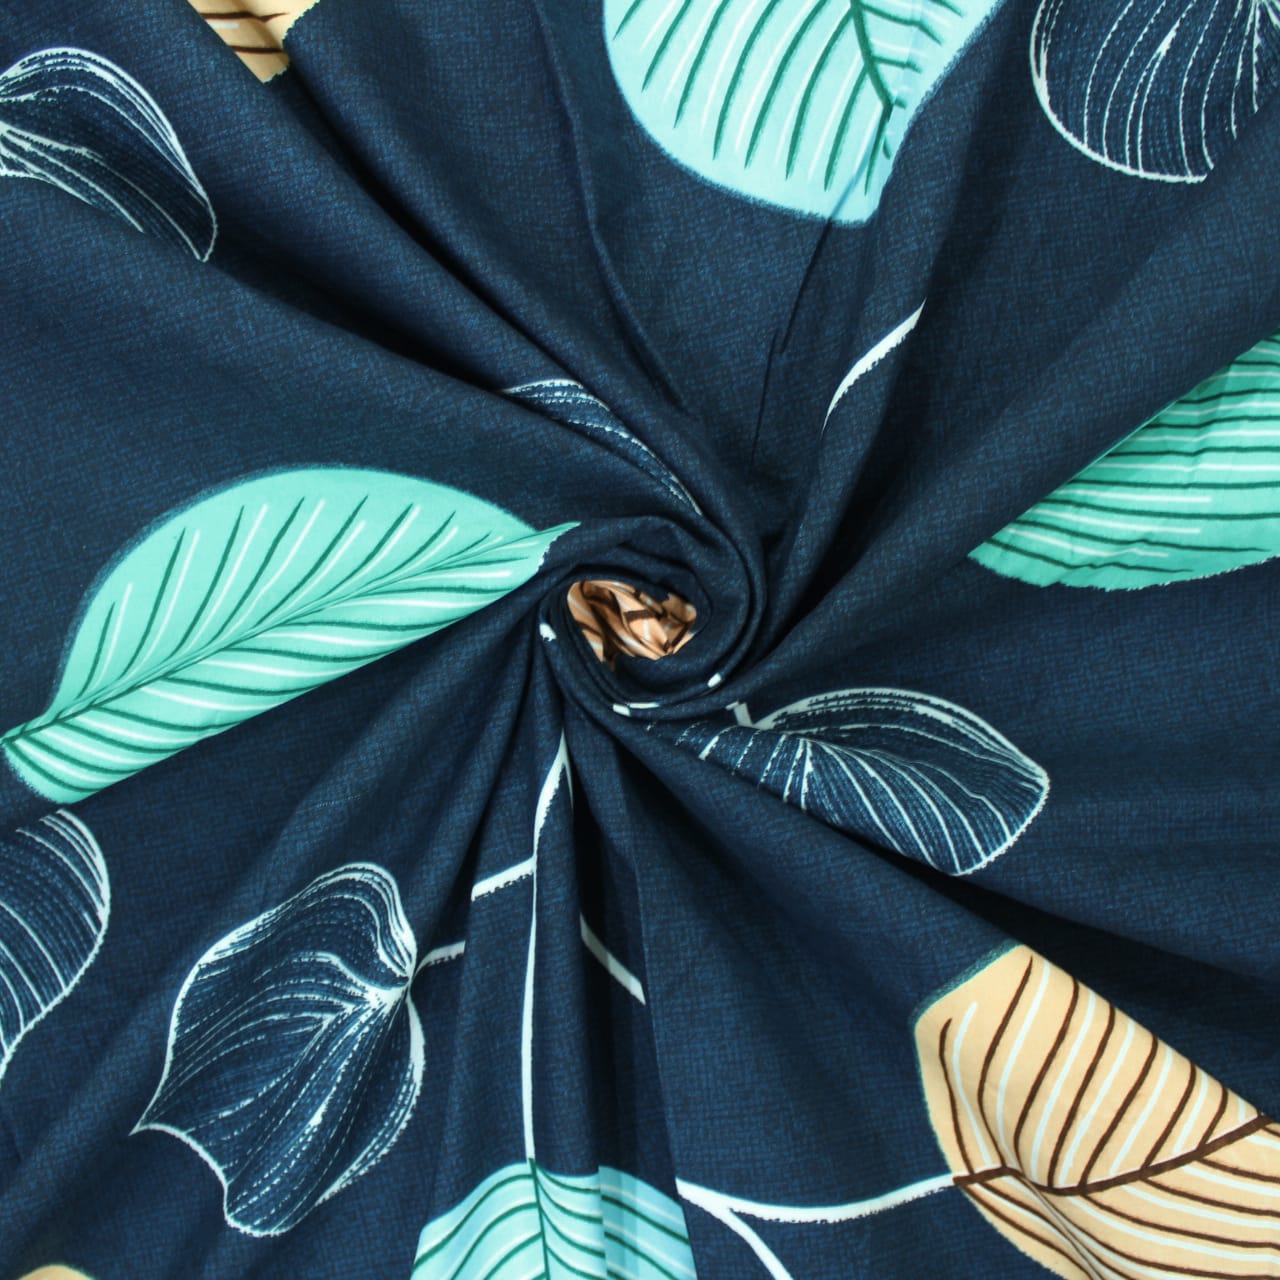 Microfiber Floral Reversible AC Dohar Blanket, Navy Blue